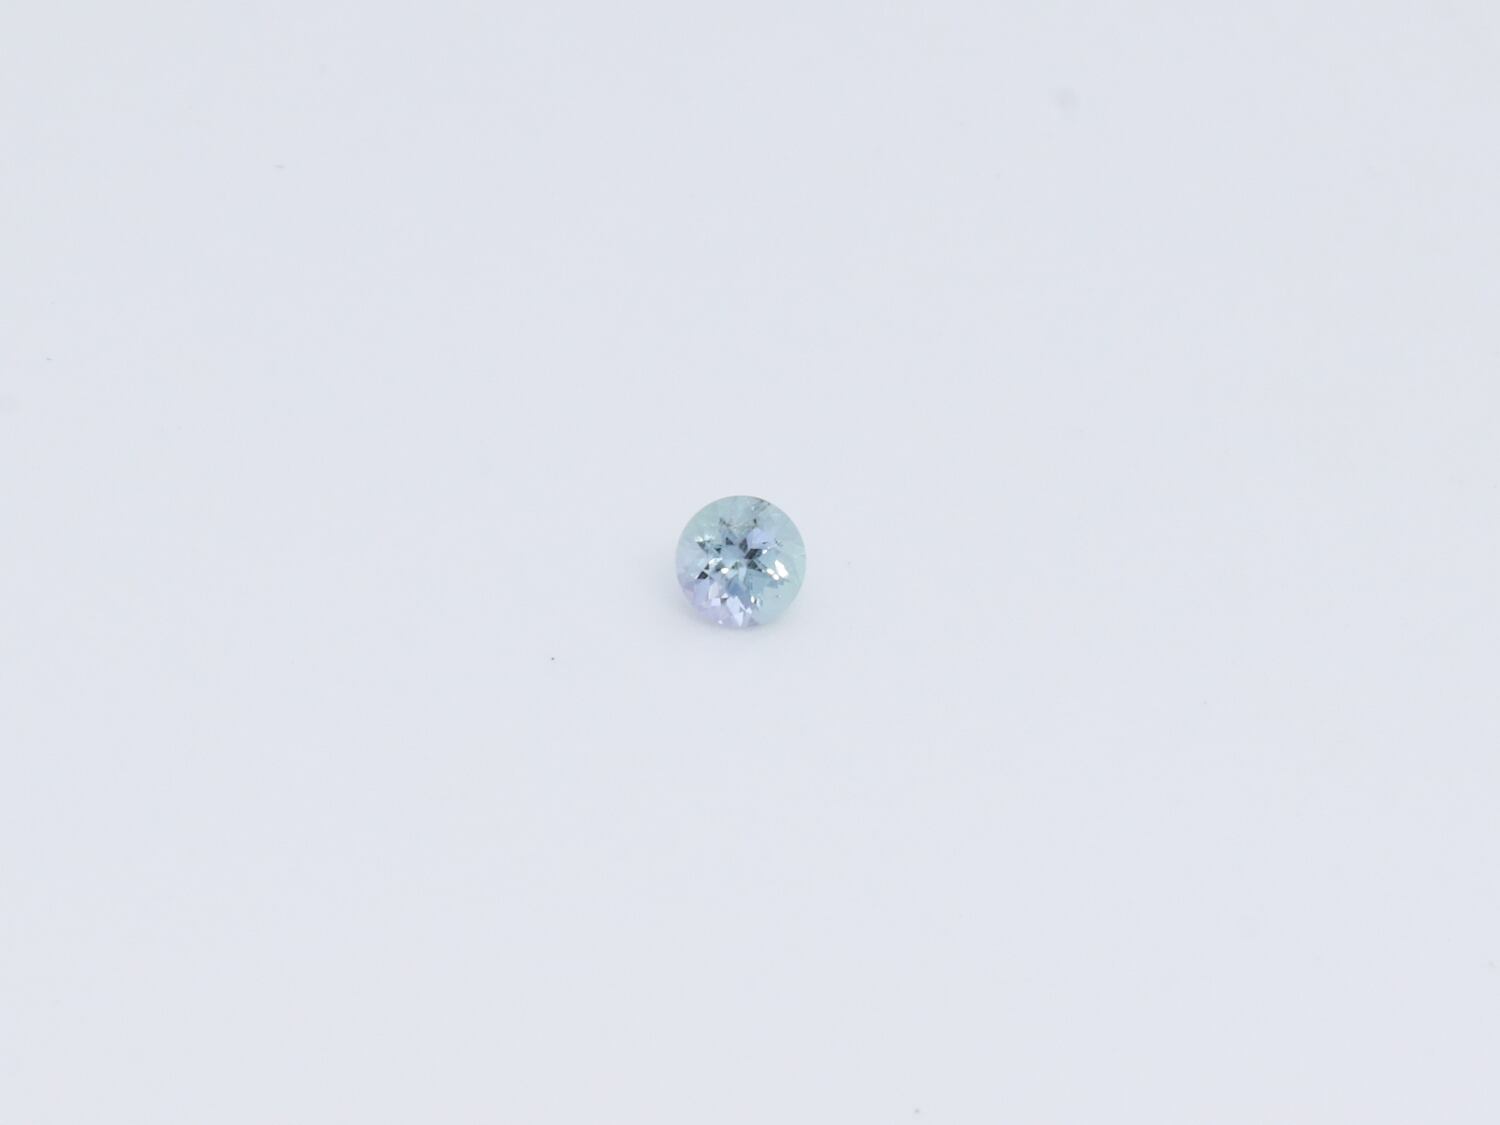 らない】 『天然コーネルピン』0.28ct タンザニア産 ルース 宝石の通販